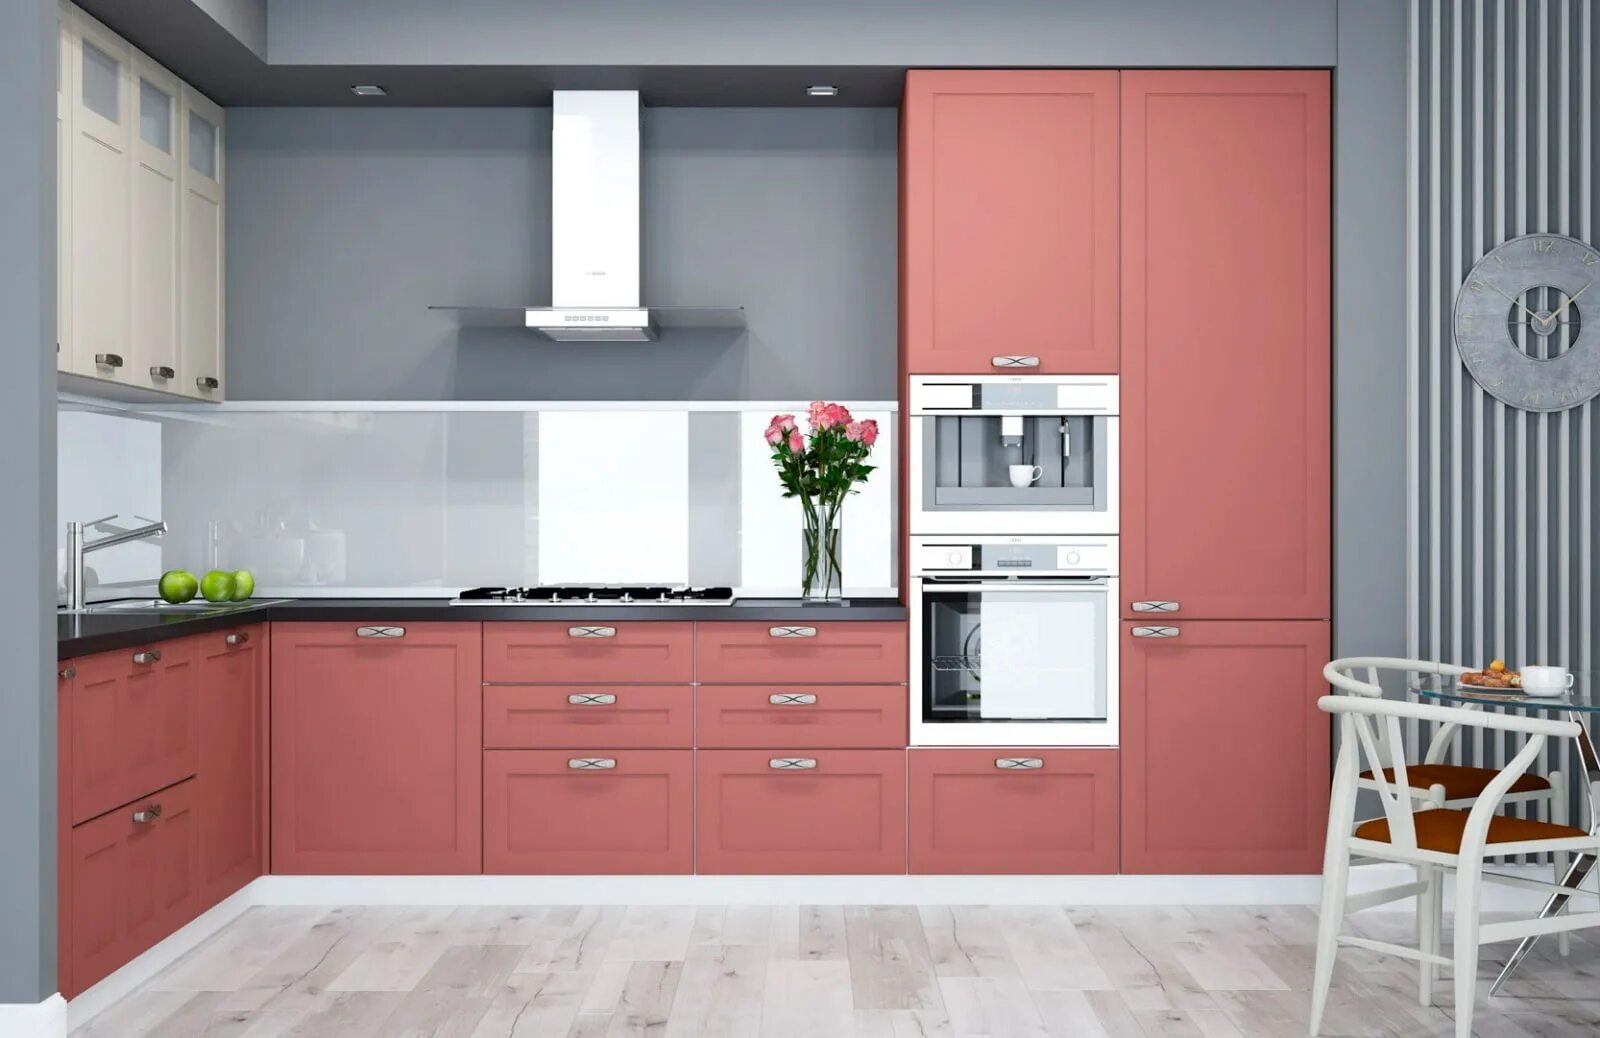 Терракотовый кухонный гарнитур. Кухонный гарнитур розовый. Кухня кораллового цвета. Сочетание цветов на кухне. Кухни така